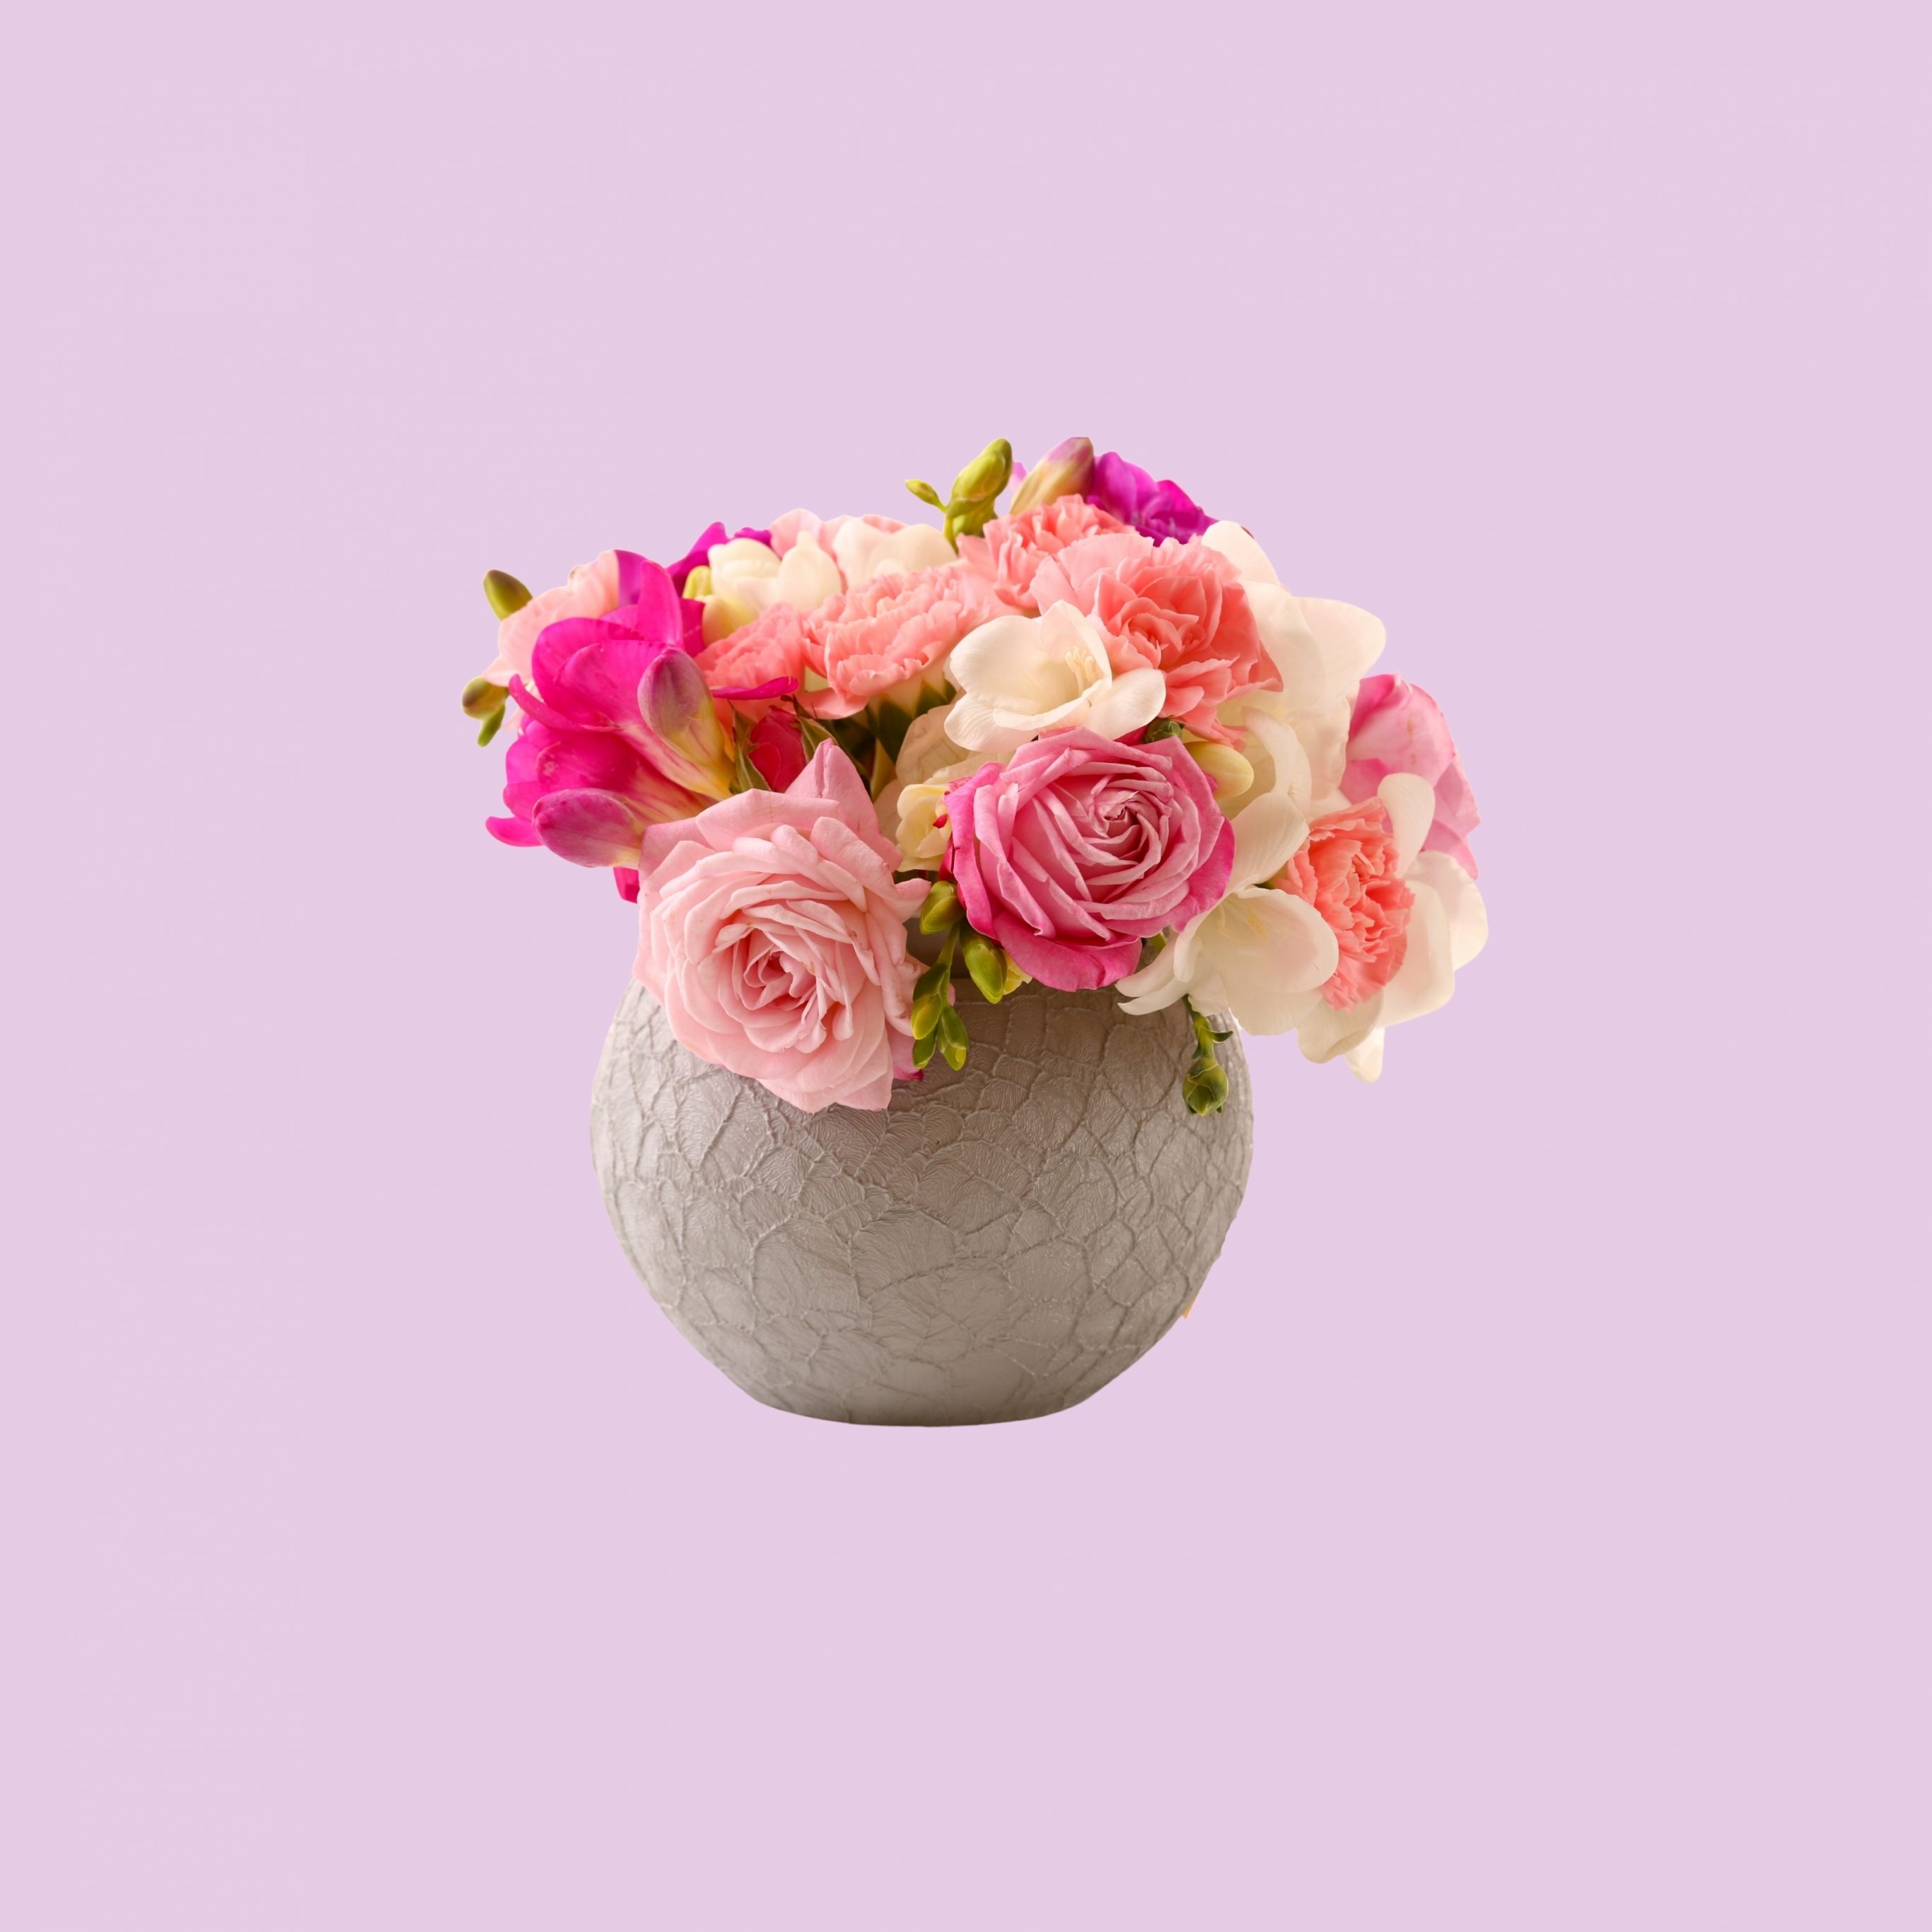 2732x2732 wallpapers 4k iPad Pro Vase Pink Roses Floral Pot iPad Wallpaper 2732x2732 pixels resolution